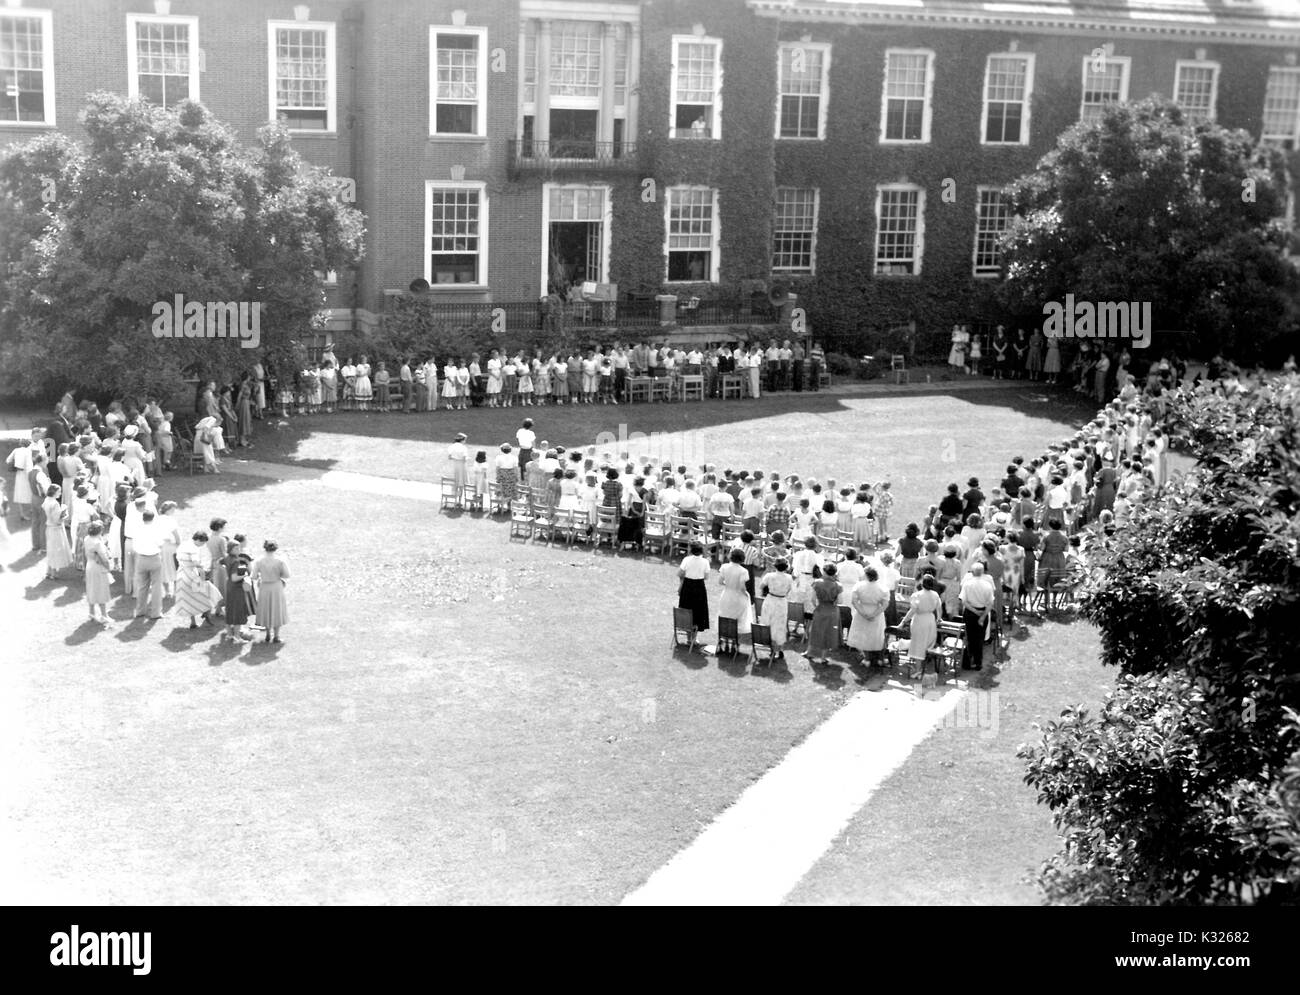 À la fin de l'année scolaire pour une école de démonstration à l'Université Johns Hopkins, les parents et les enseignants sont devant des rangées de chaises à l'extérieur d'un bâtiment du campus recouvert de lierre, attendant que les jeunes garçons et filles pour commencer le spectacle qu'ils vont accomplir pour clore l'année, dans l'herbe sur le quadrilatère sur une journée ensoleillée, Baltimore, Maryland, juillet, 1950. Banque D'Images